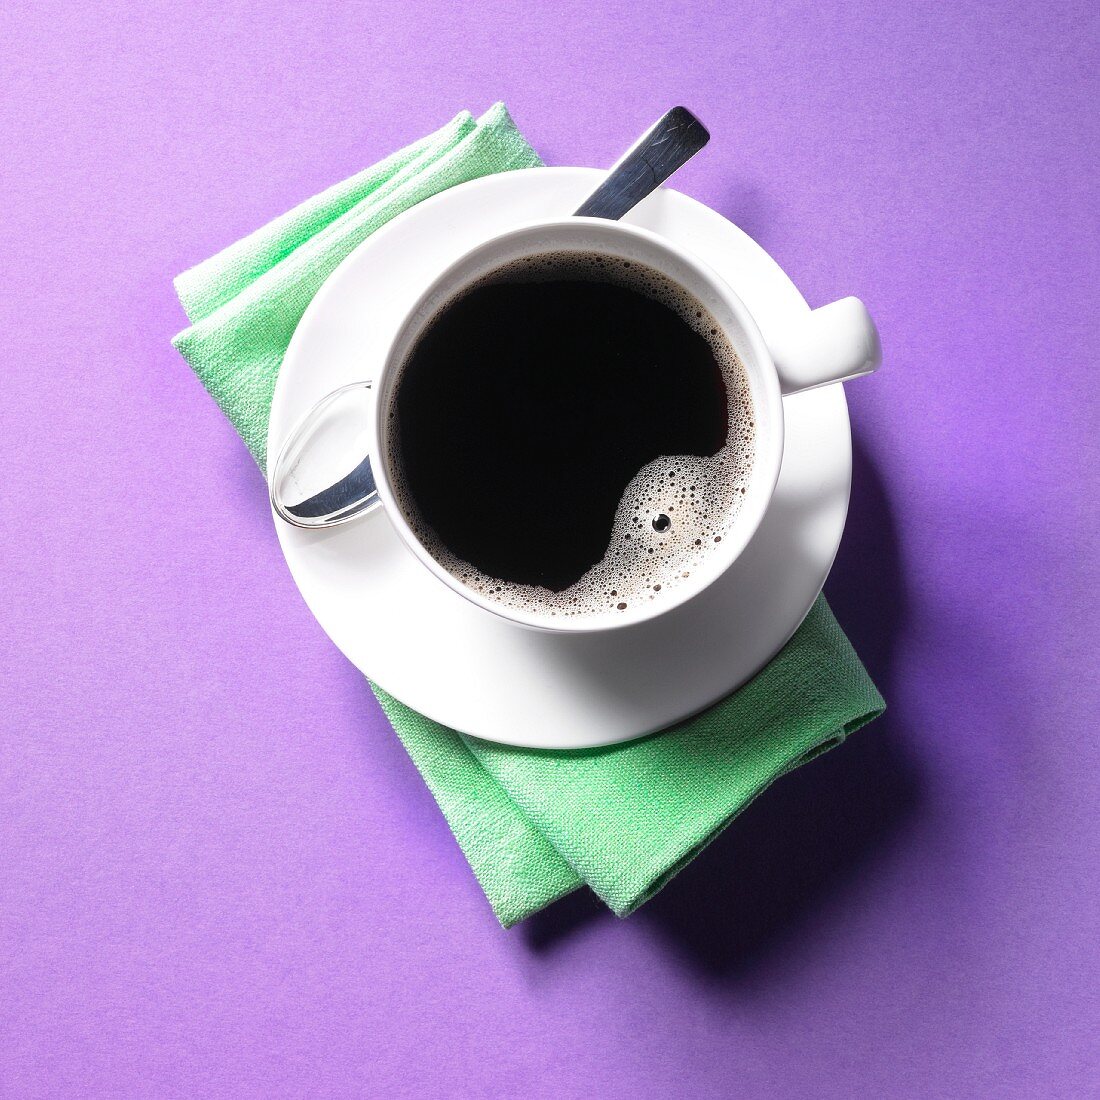 Tasse mit schwarzem Kaffee auf lila Untergrund